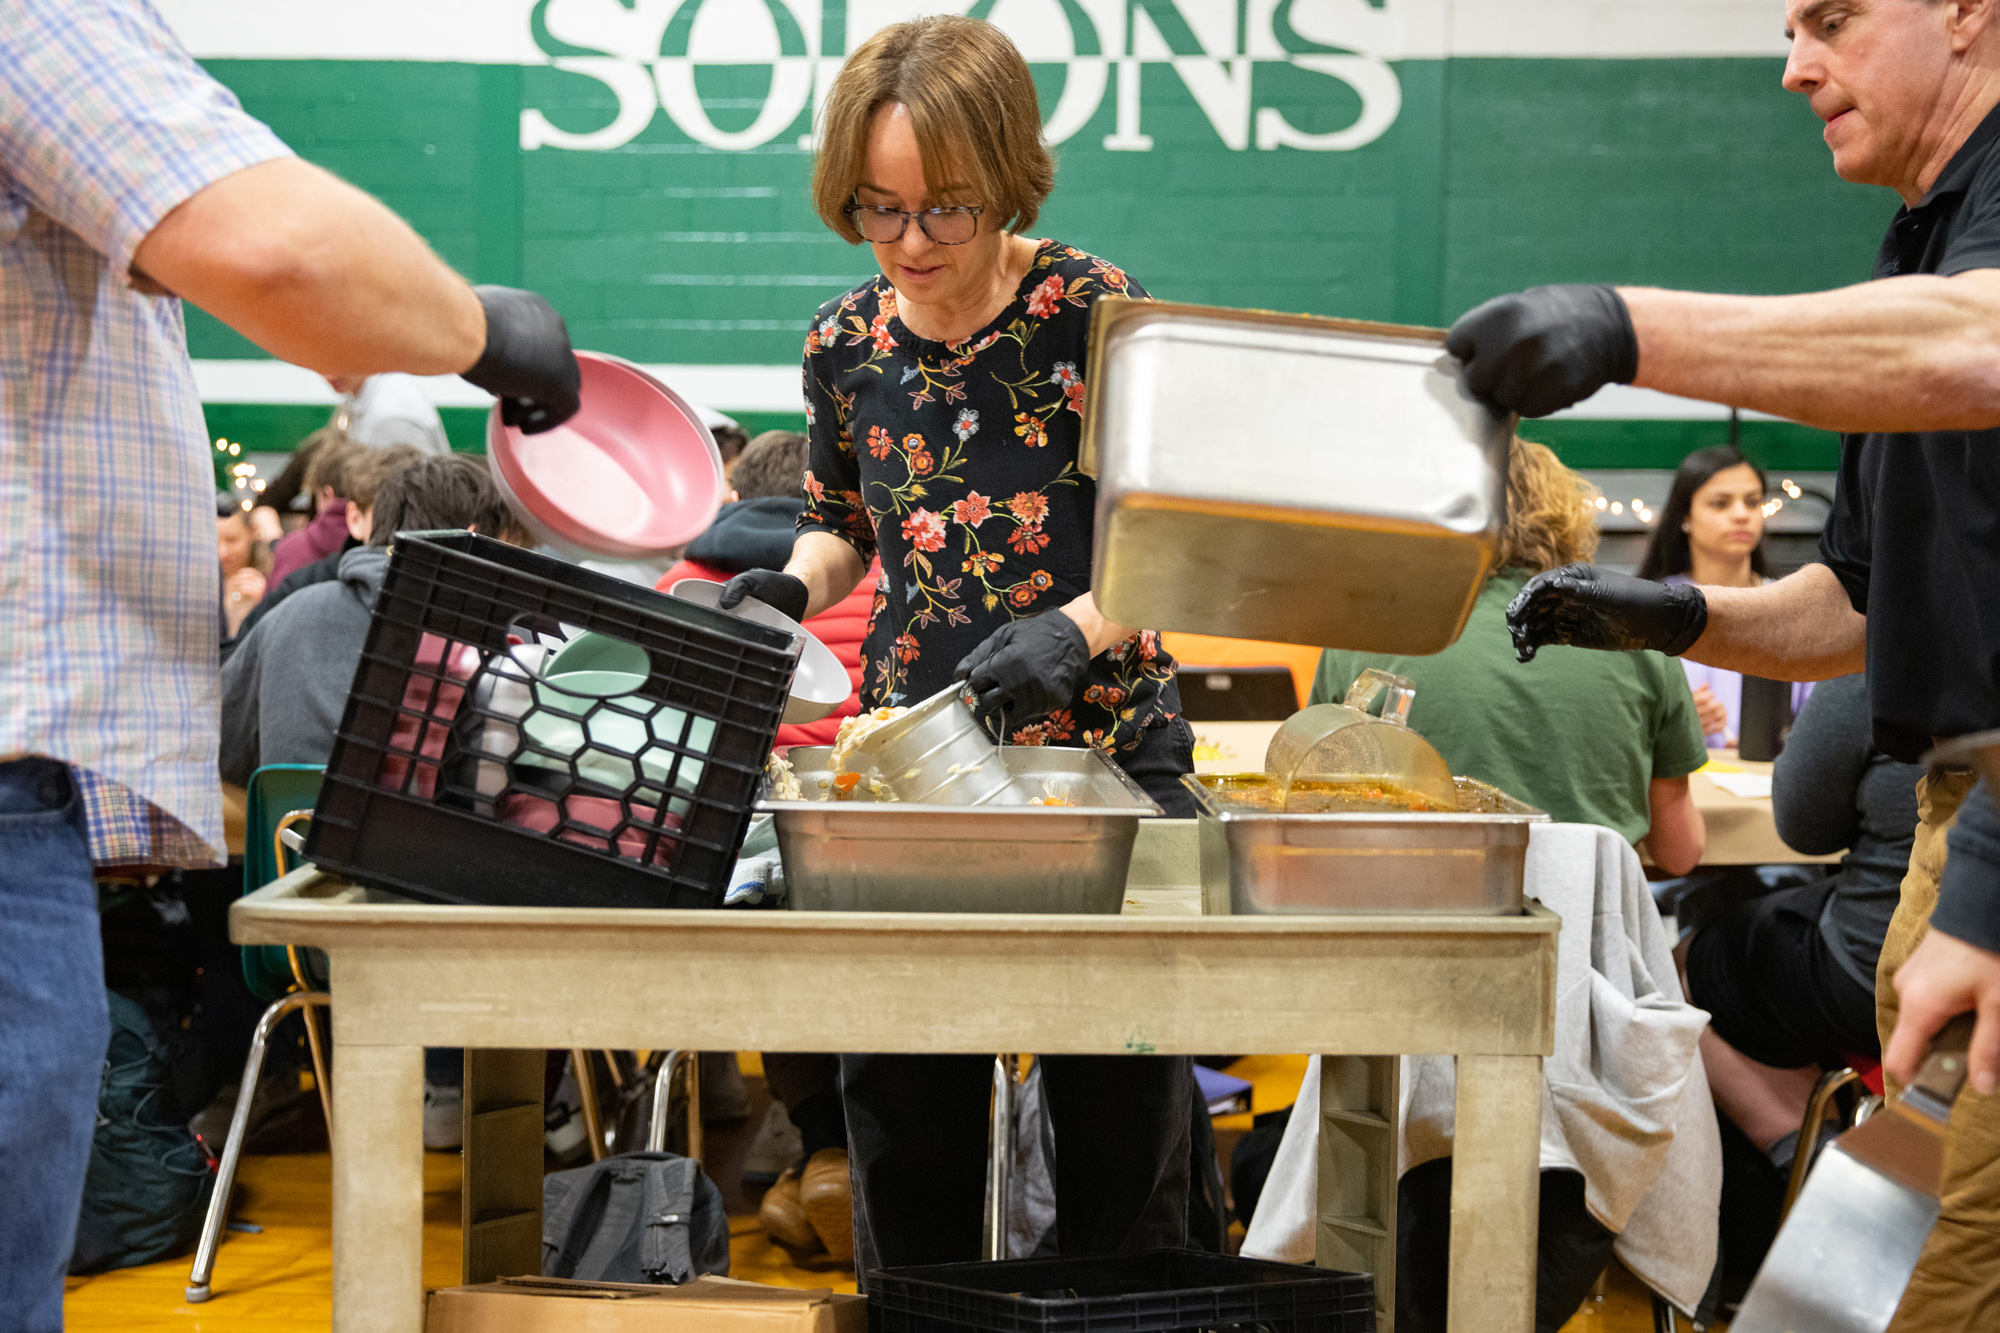 Teachers serve soup from a cart